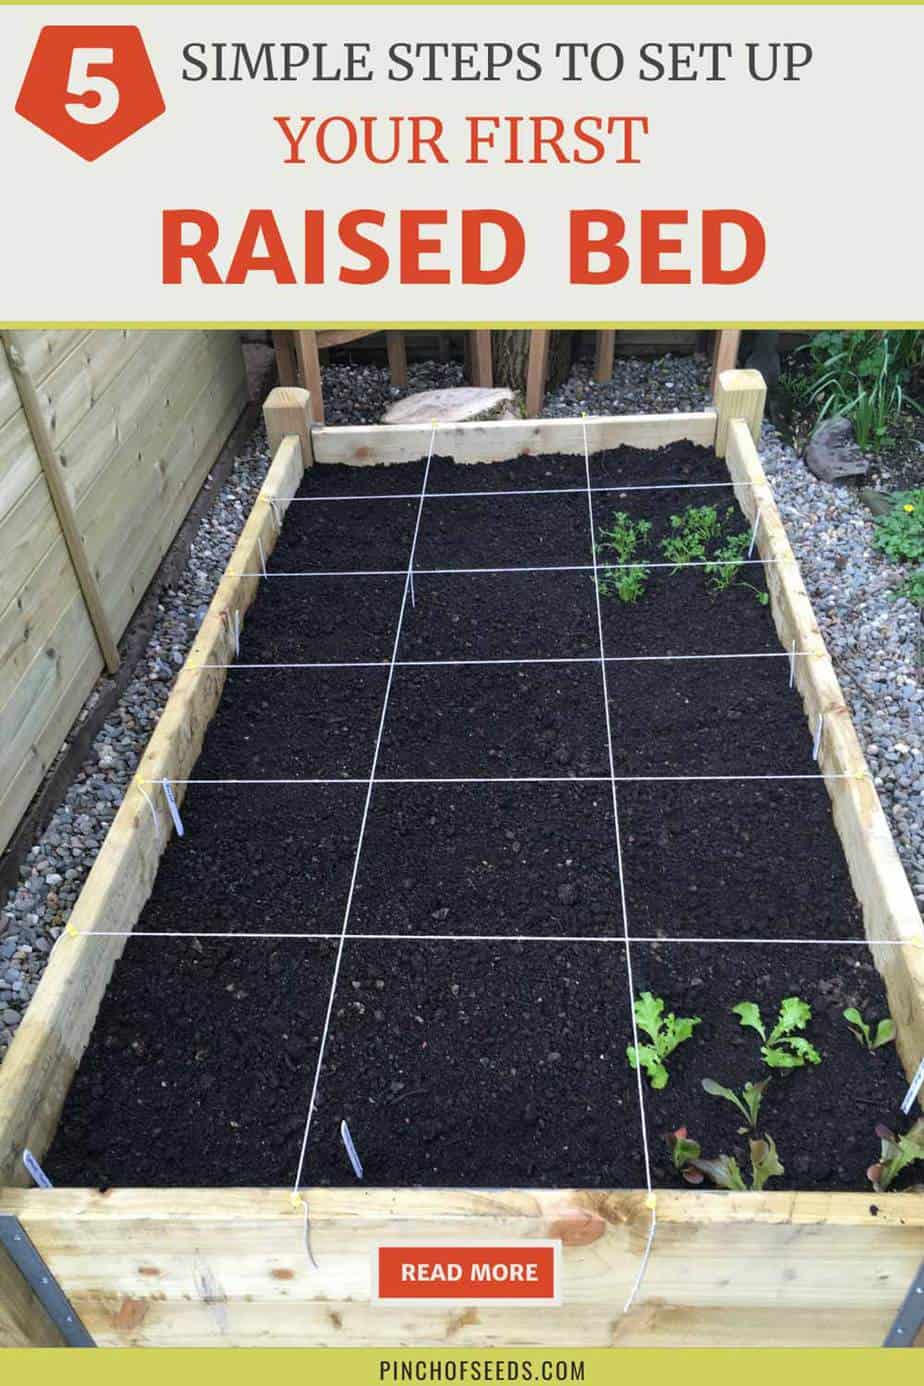 First raised garden bed